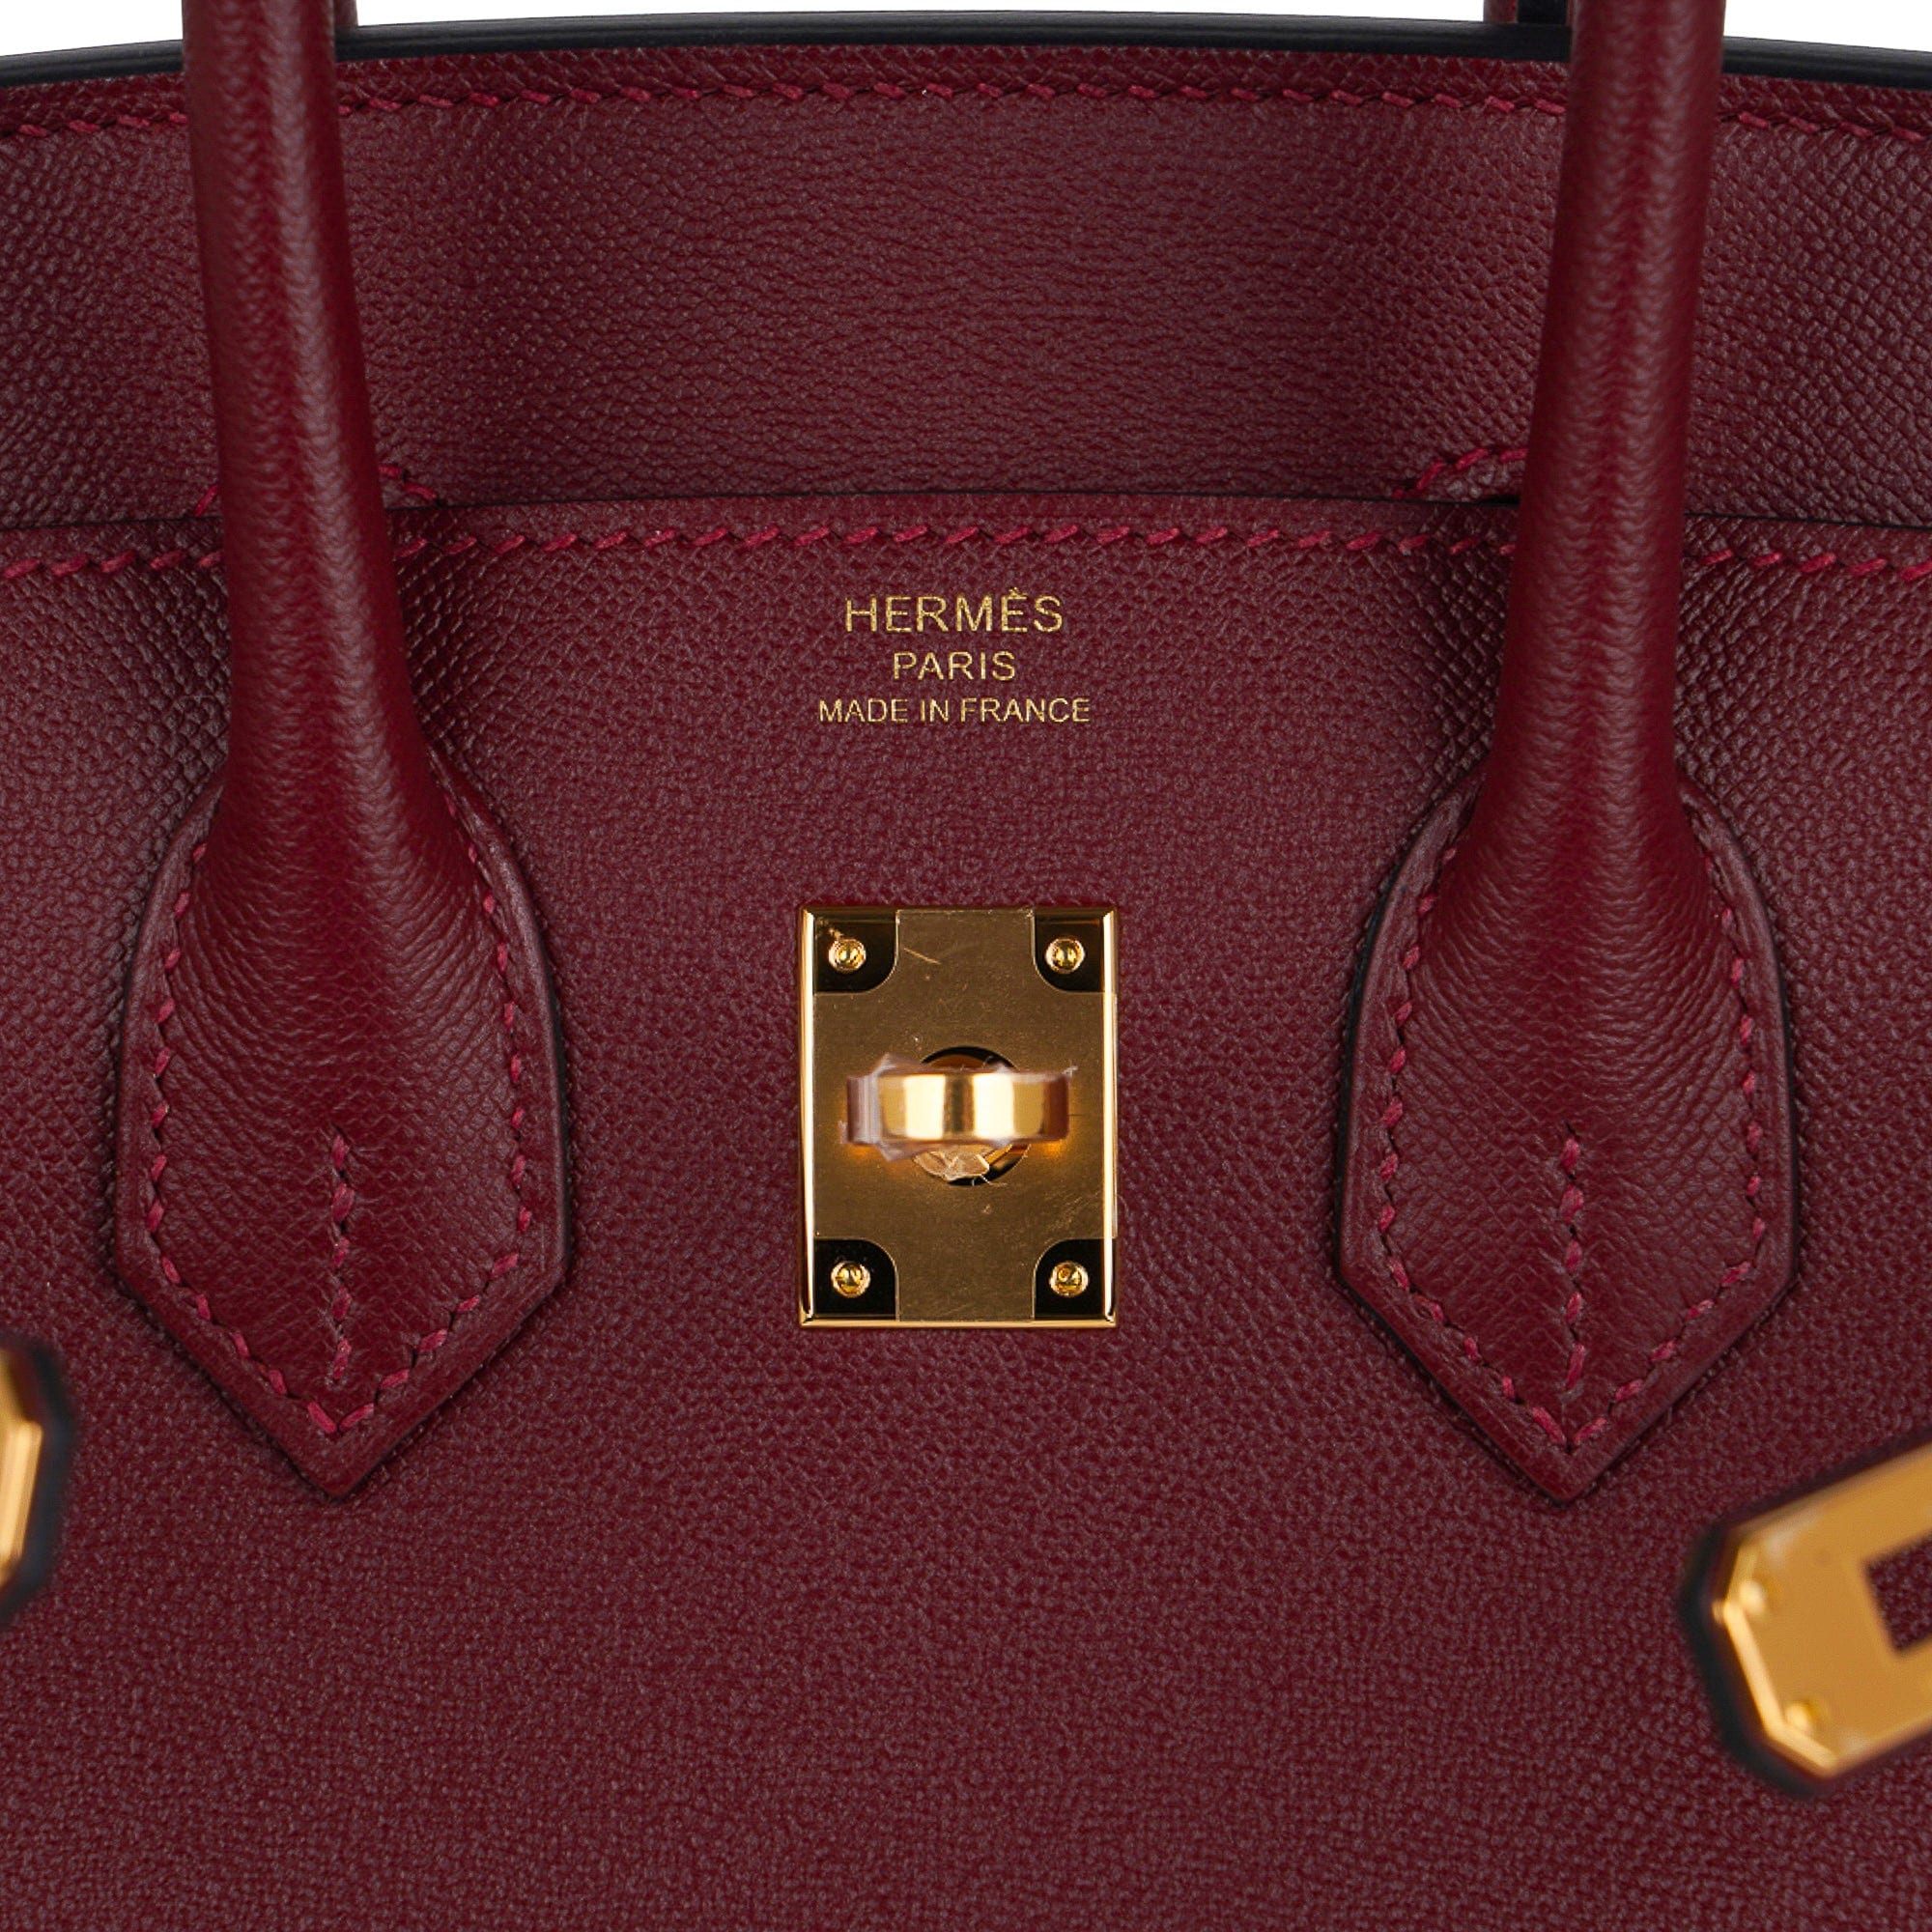 Hermès 2021 Madame Sellier Birkin 25 - Brown Handle Bags, Handbags